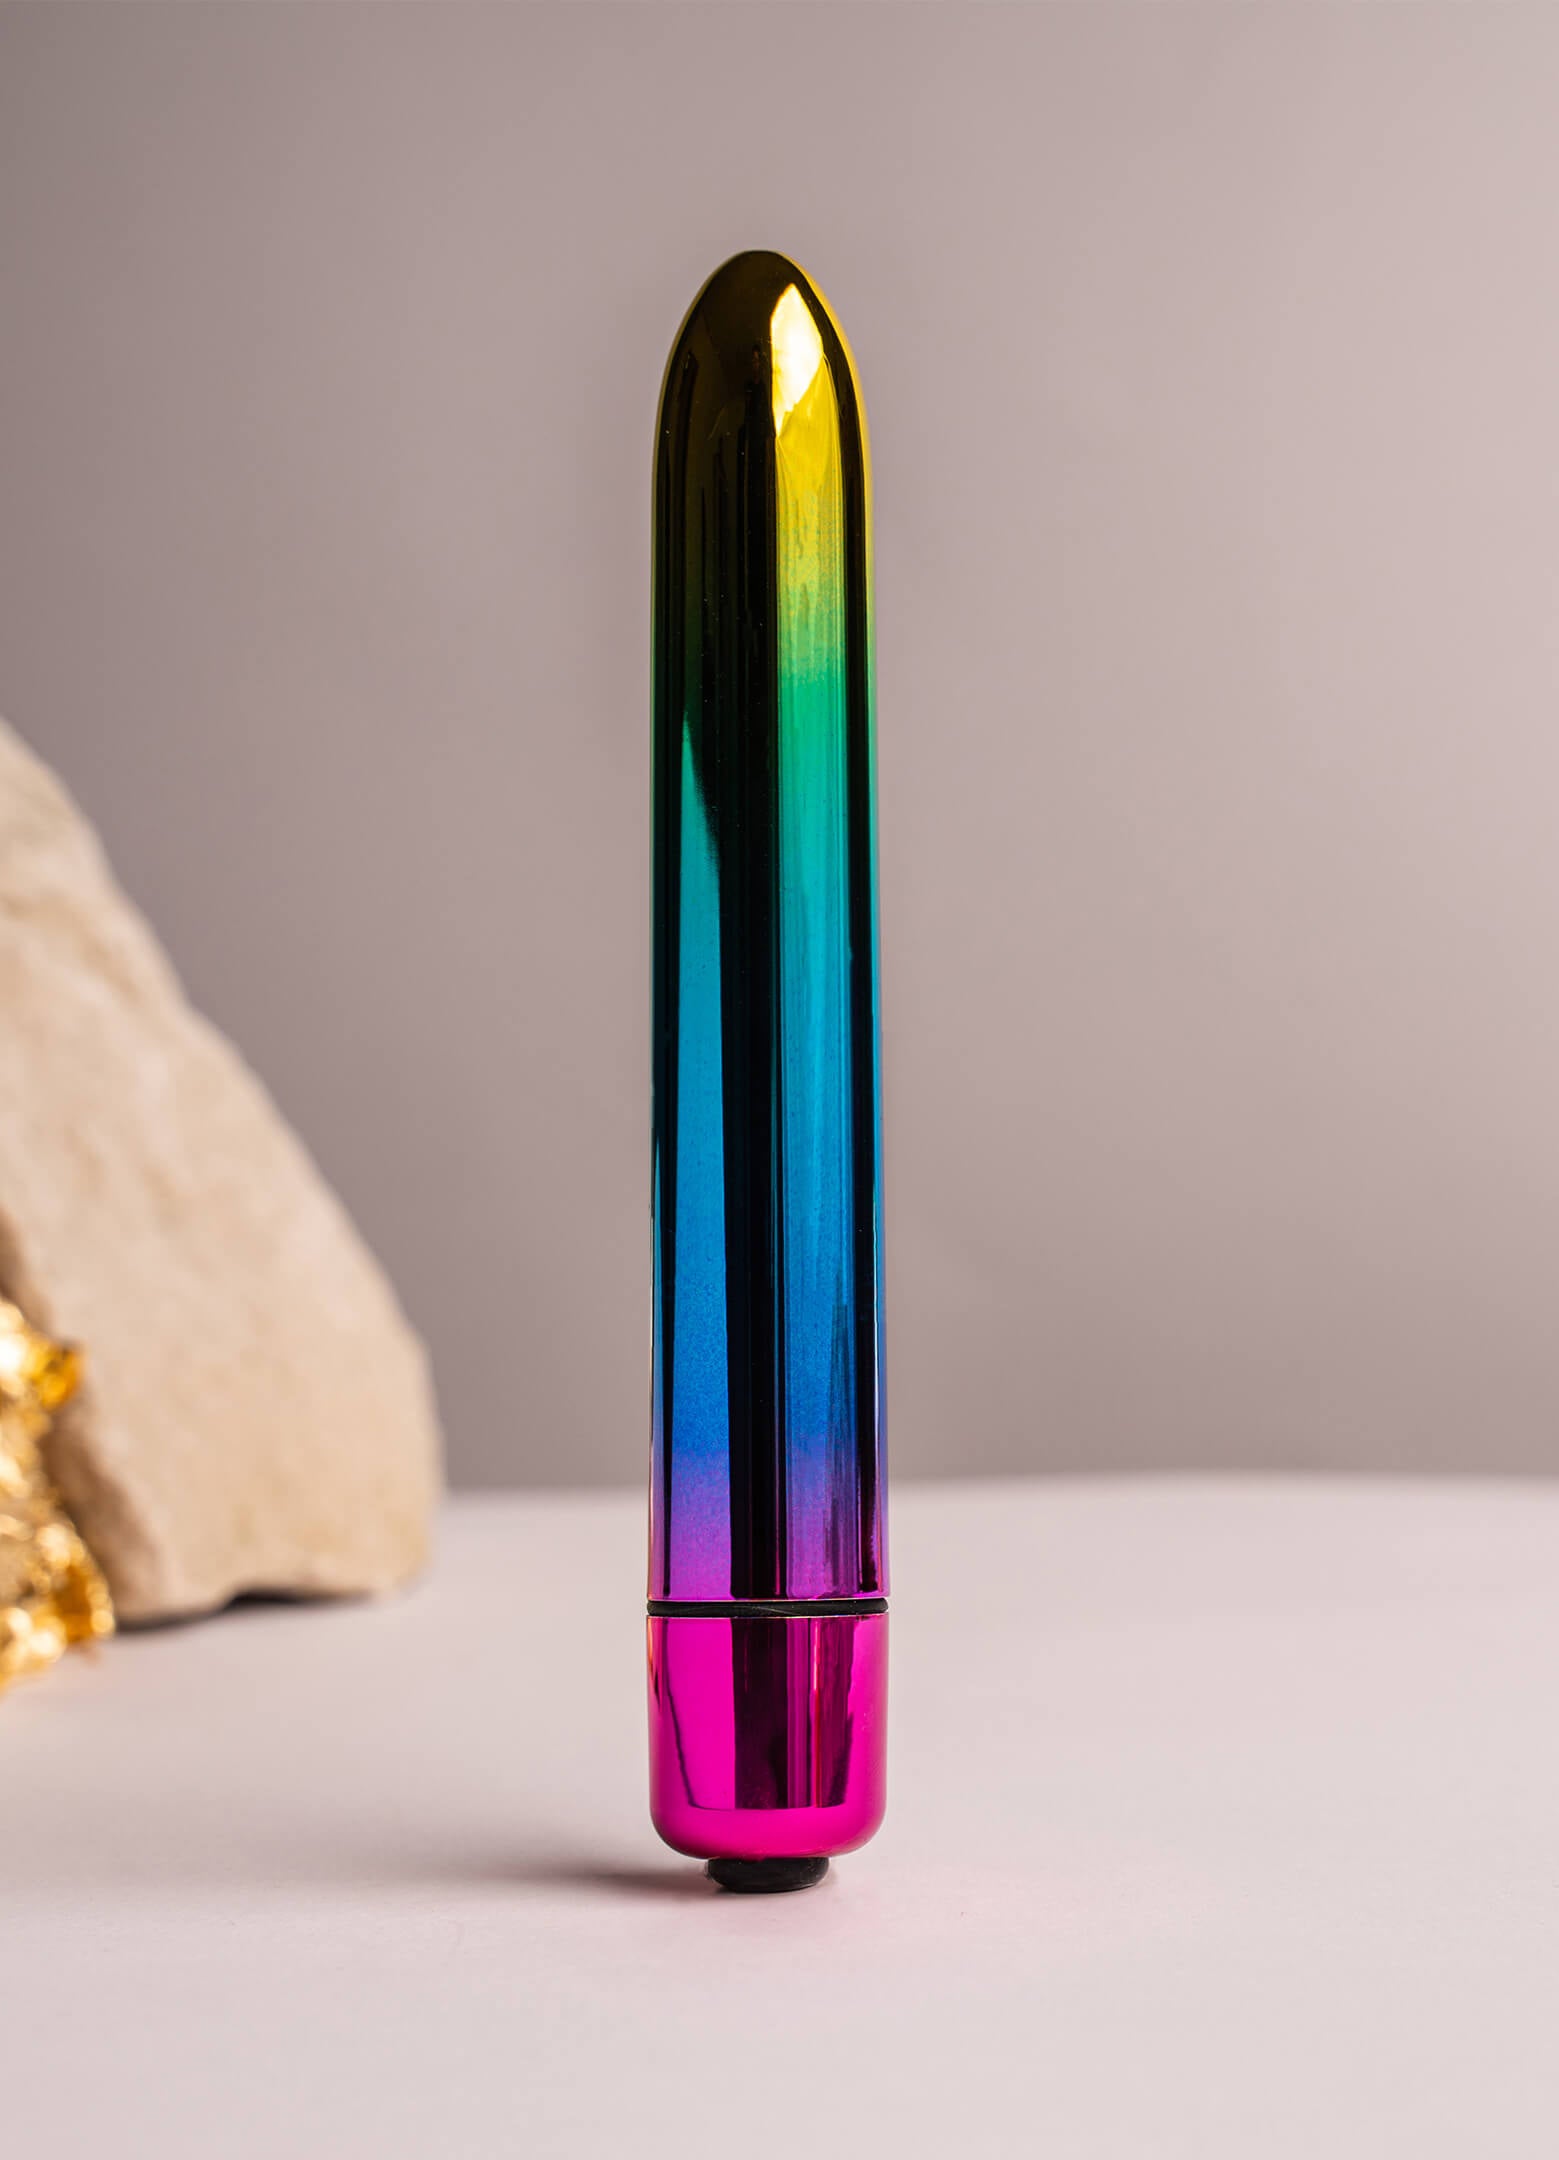 Medium sized insertable bullet vibrator in rainbow chrome colour.